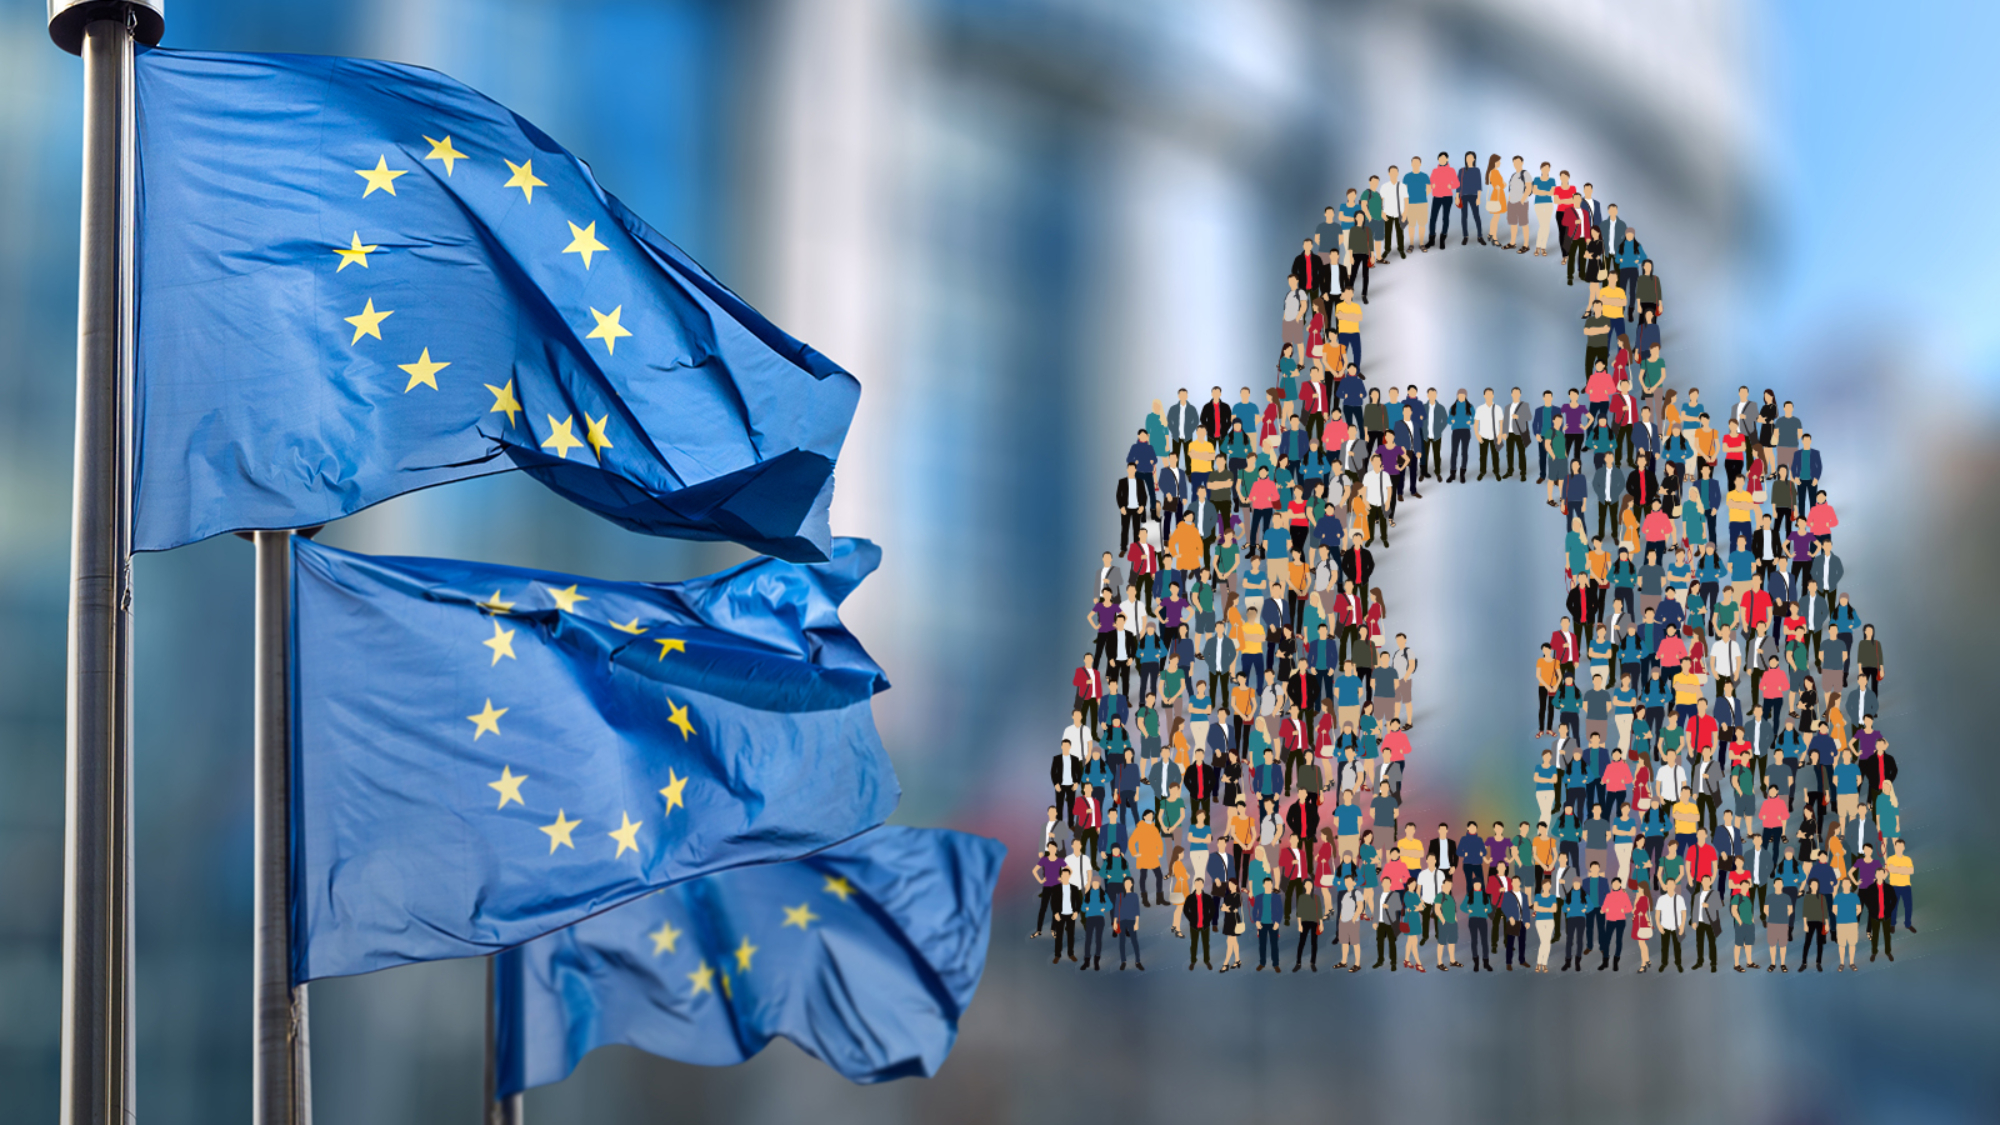 Día Europeo de la Protección de Datos